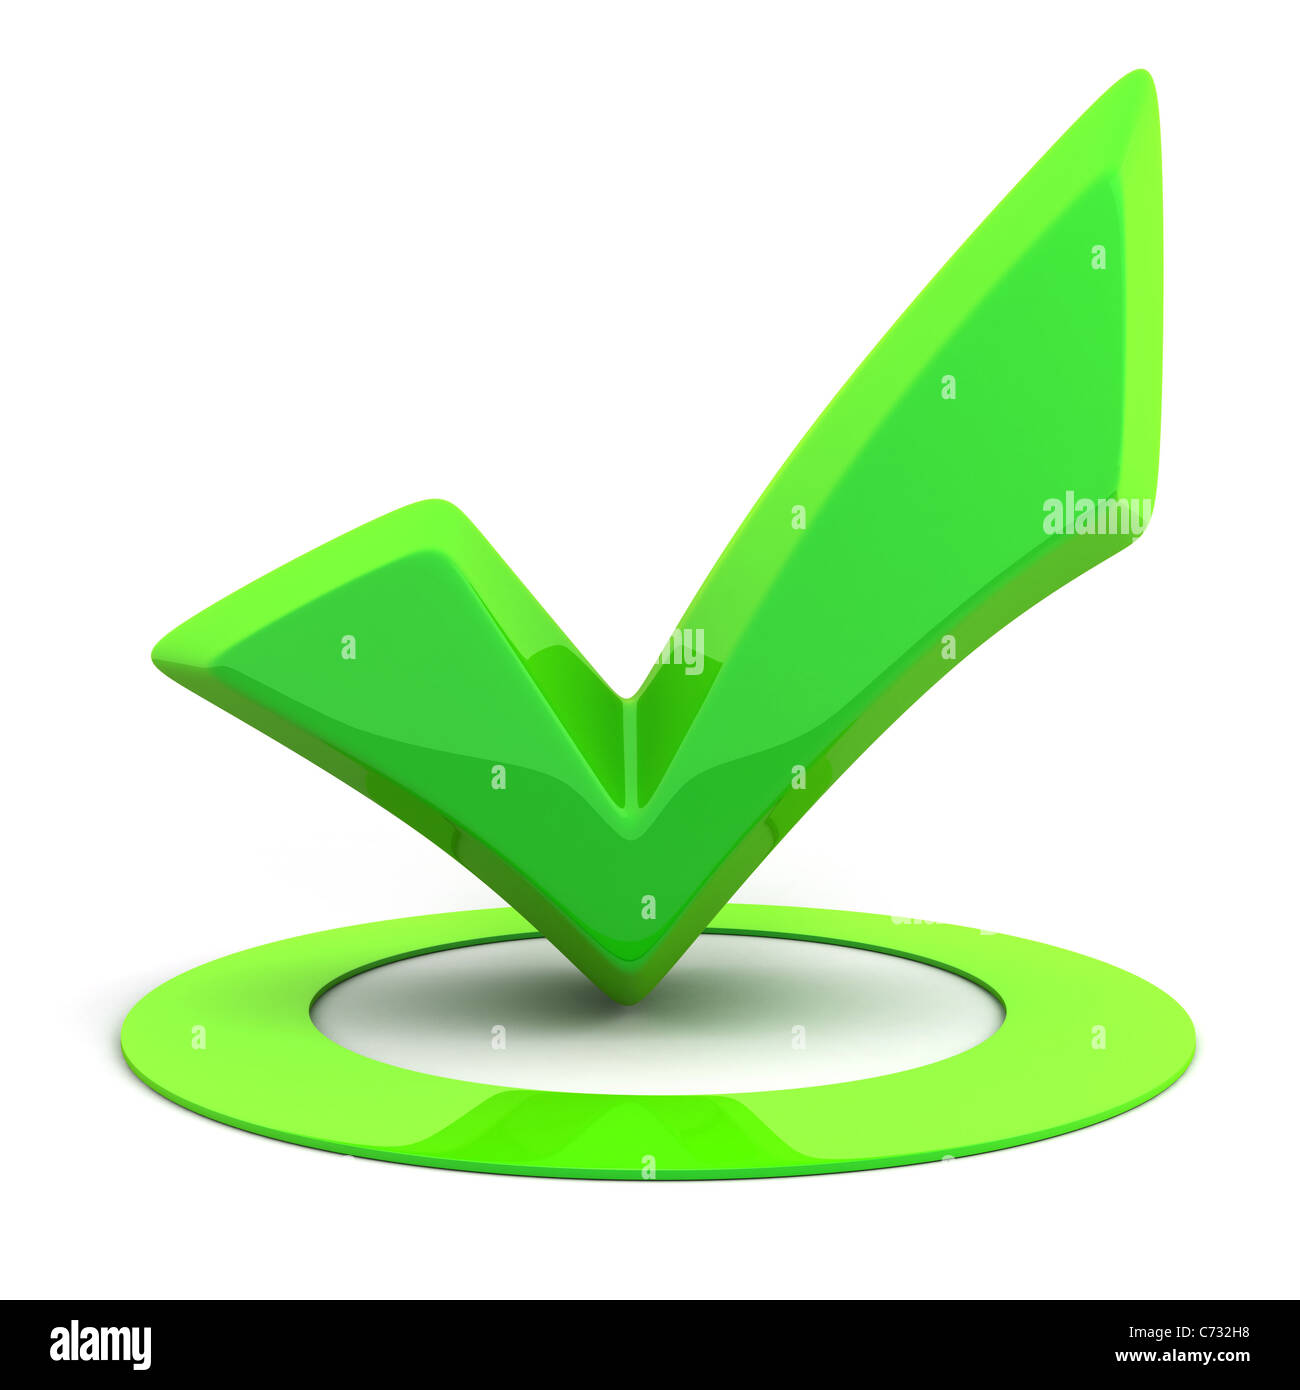 Resumen cartel verde ok (hecho en 3D) Foto de stock